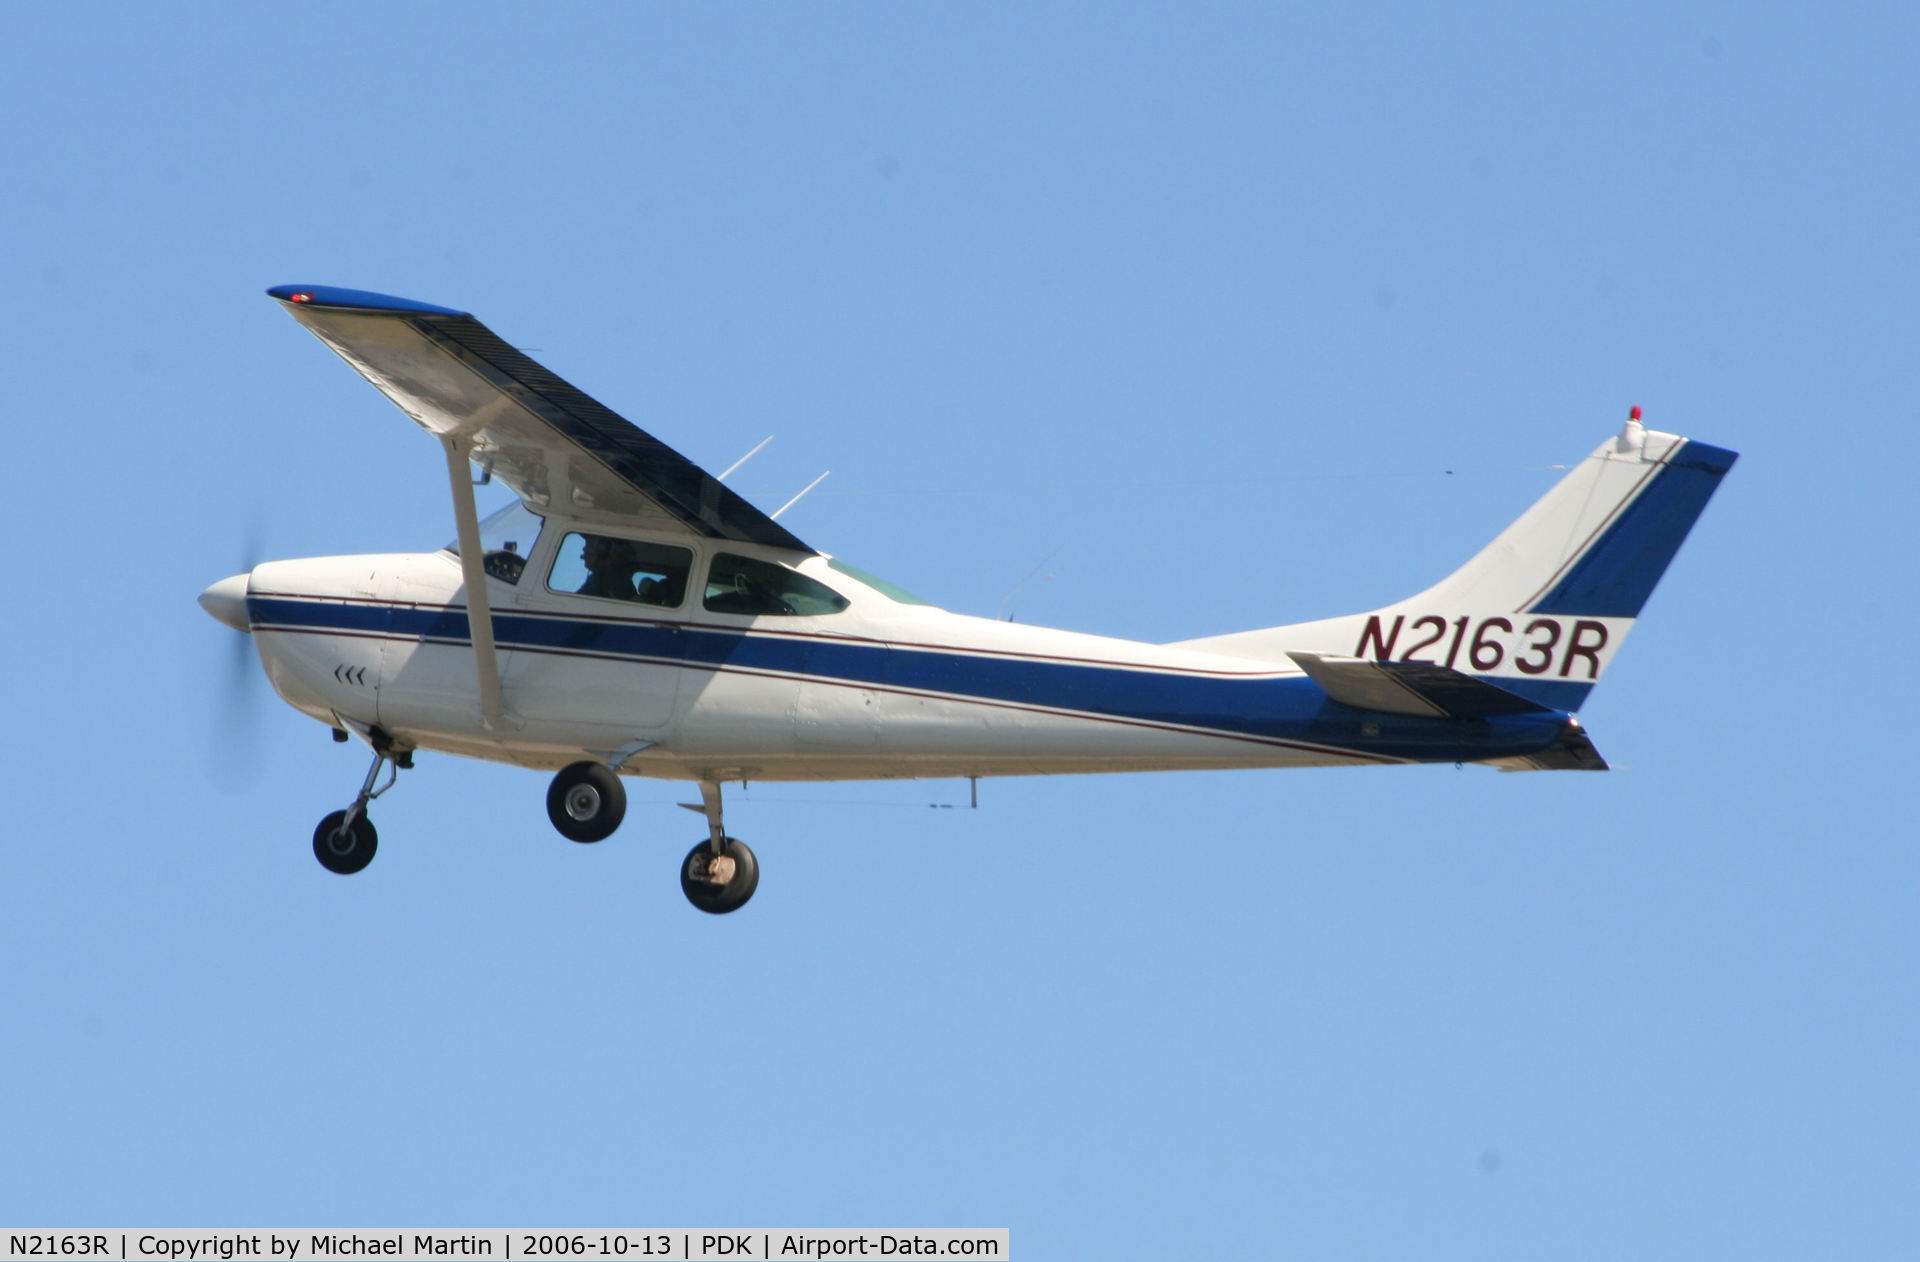 N2163R, 1964 Cessna 182G Skylane C/N 18255363, Departing Runway 34